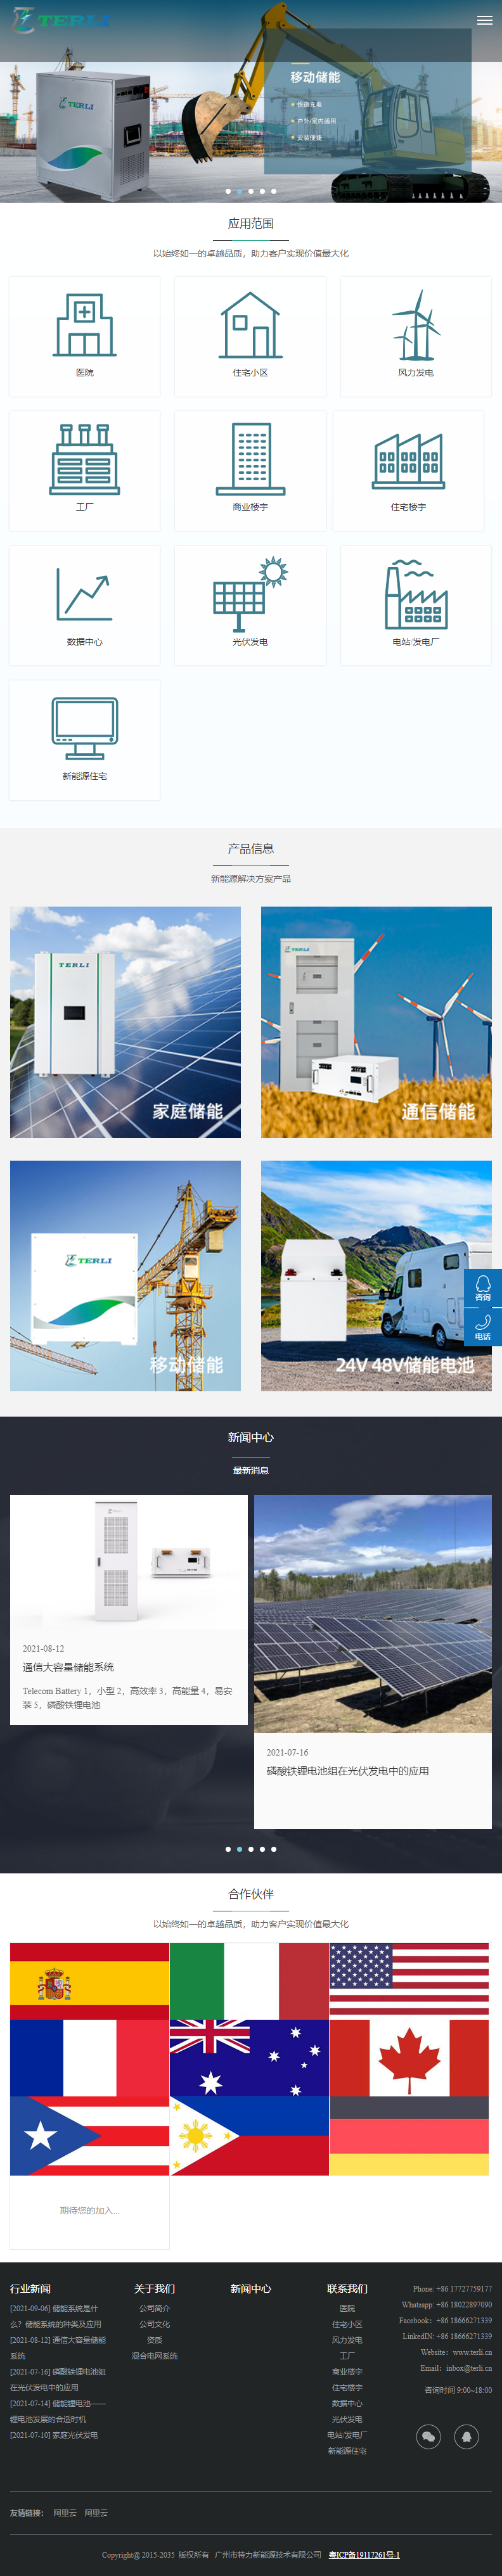 广州市特力新能源技术有限公司网站案例